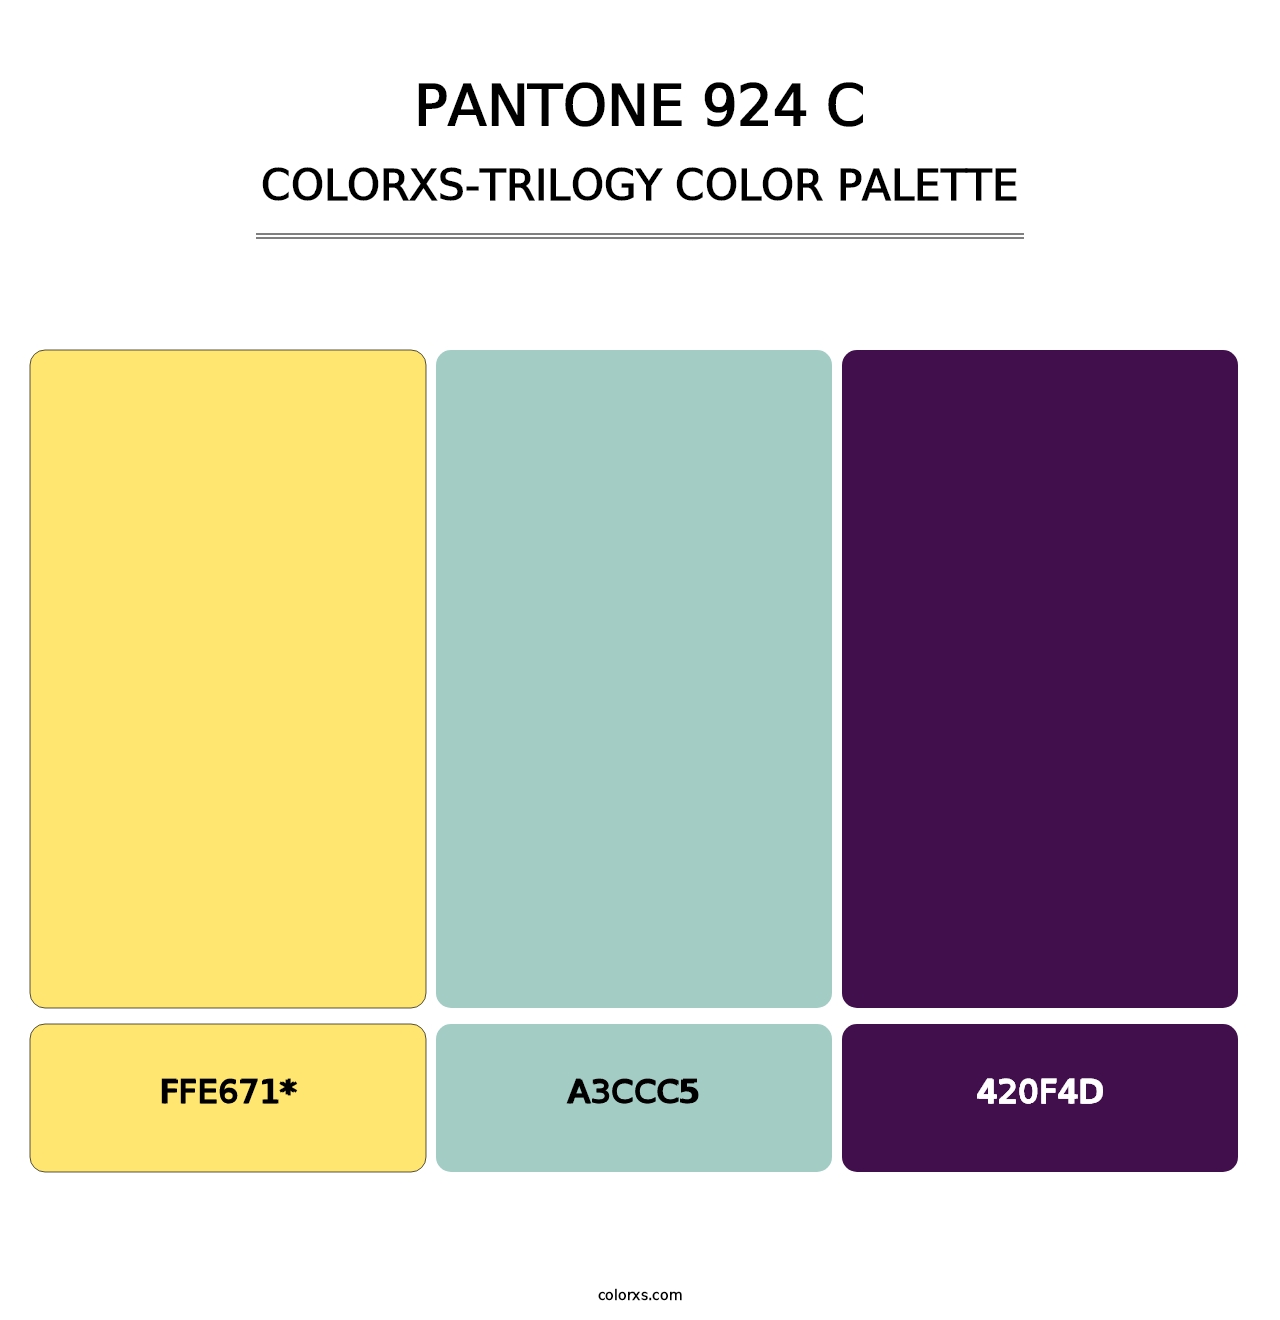 PANTONE 924 C - Colorxs Trilogy Palette